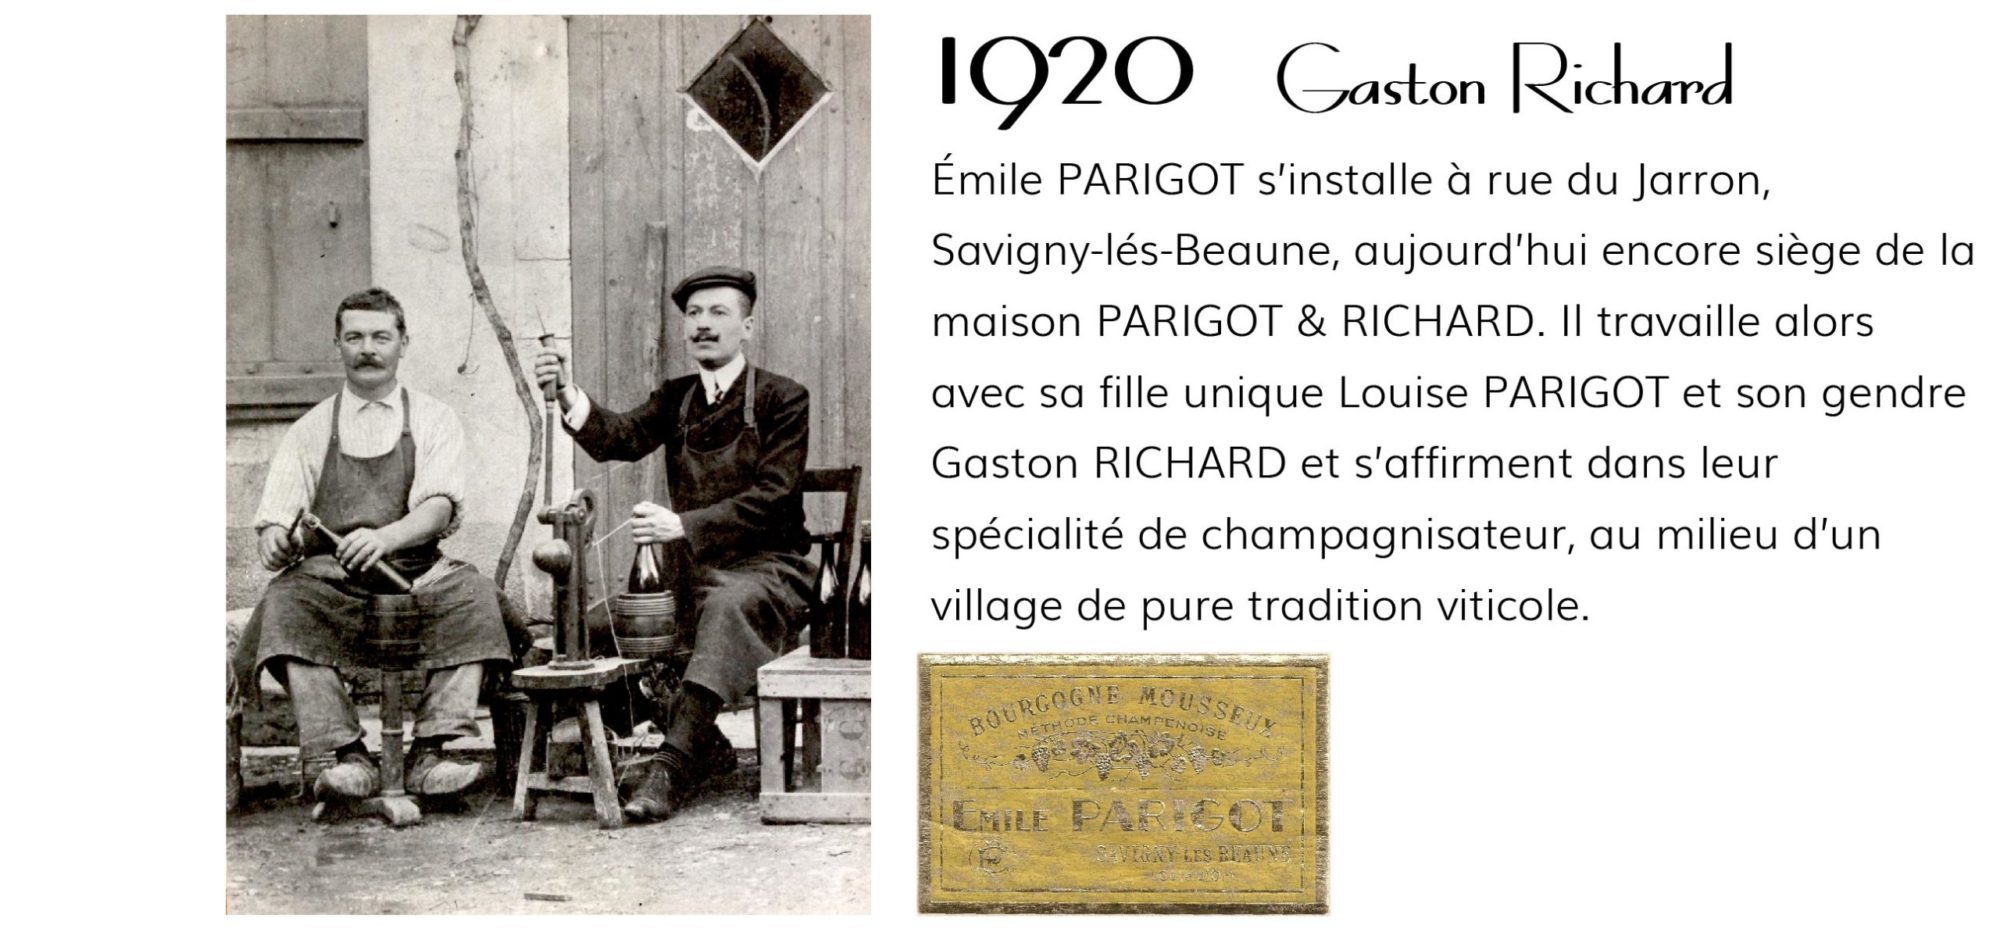 1920 Gaston Richard - crémant Parigot